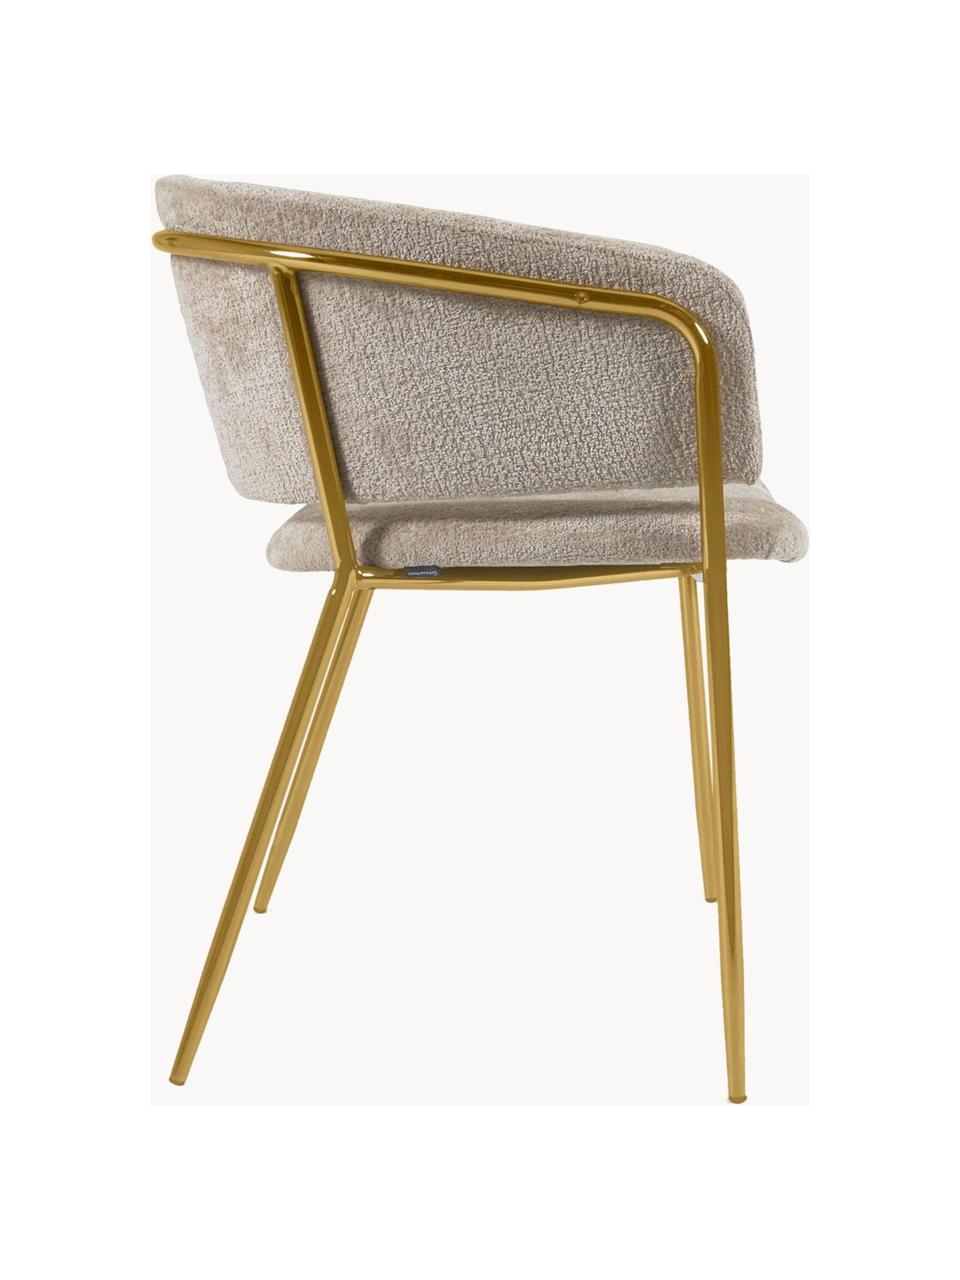 Žinylkové židle s područkami Runnie, 2 ks, Světle béžová, zlatá, Š 58 cm, H 58 cm